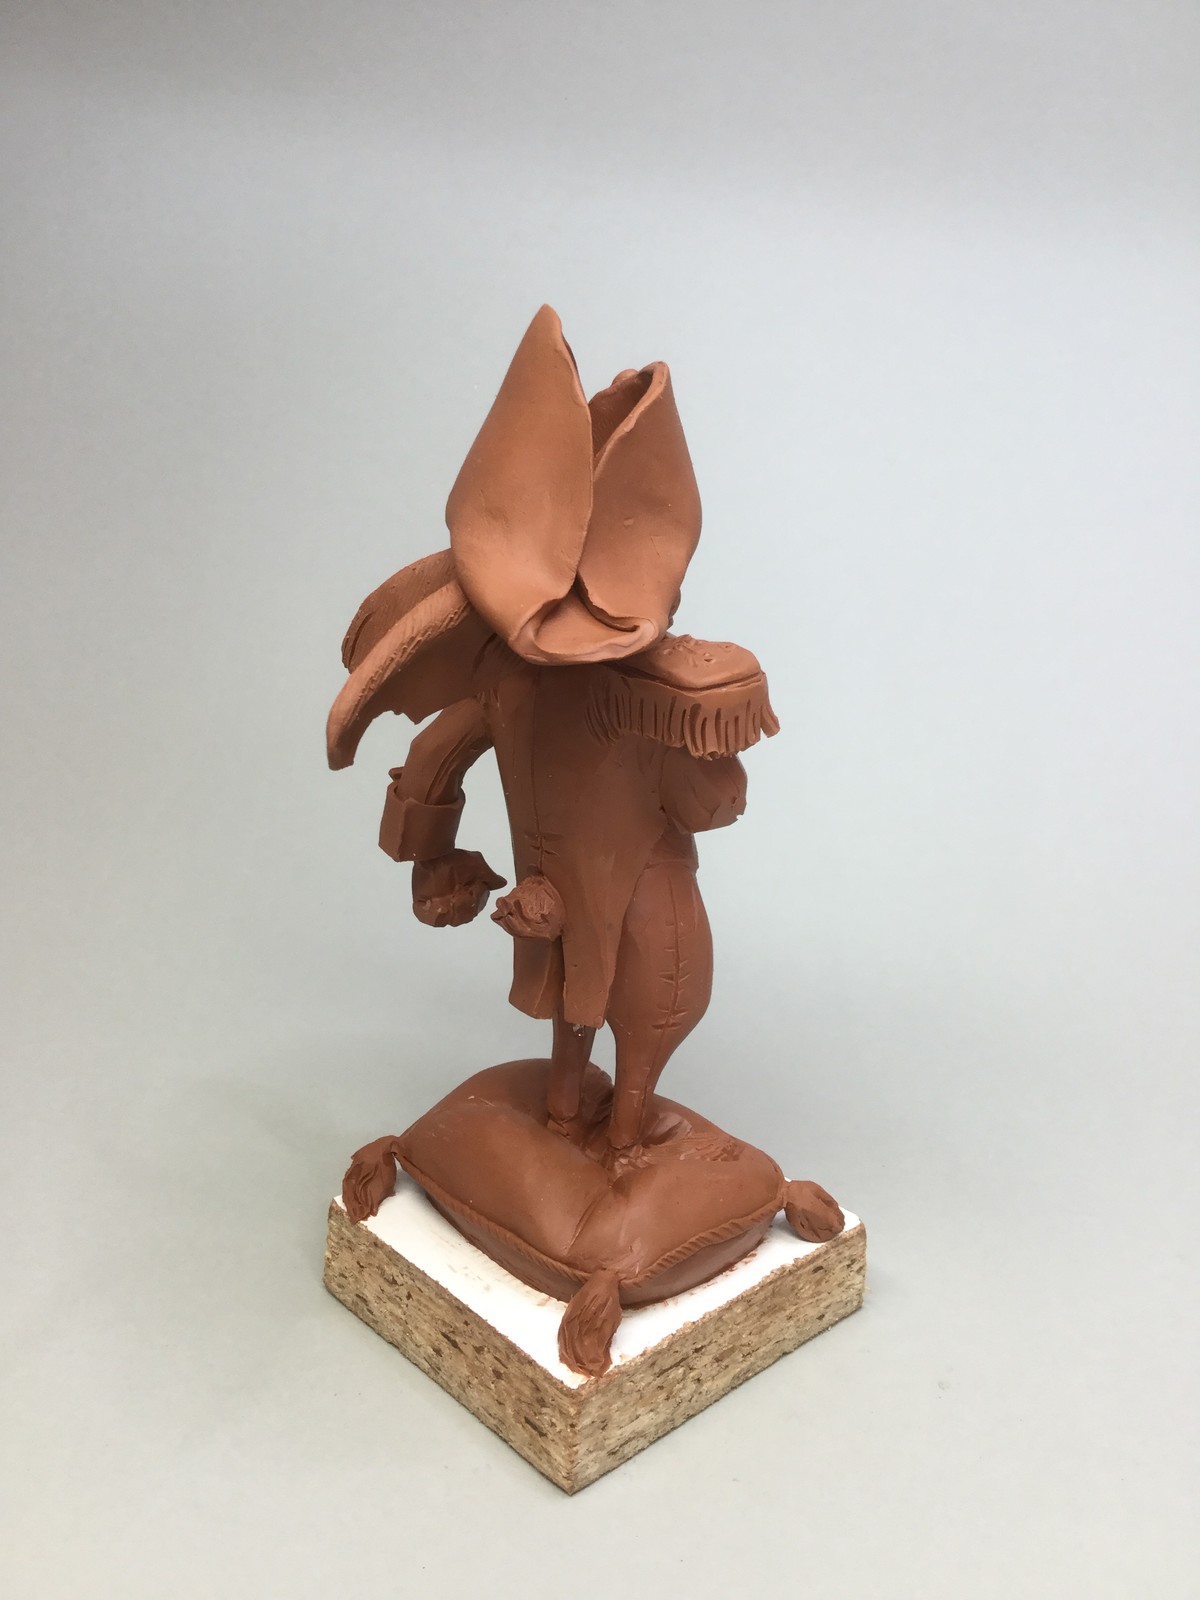 Rabbit/quick sketch plasticine/size 6 inches